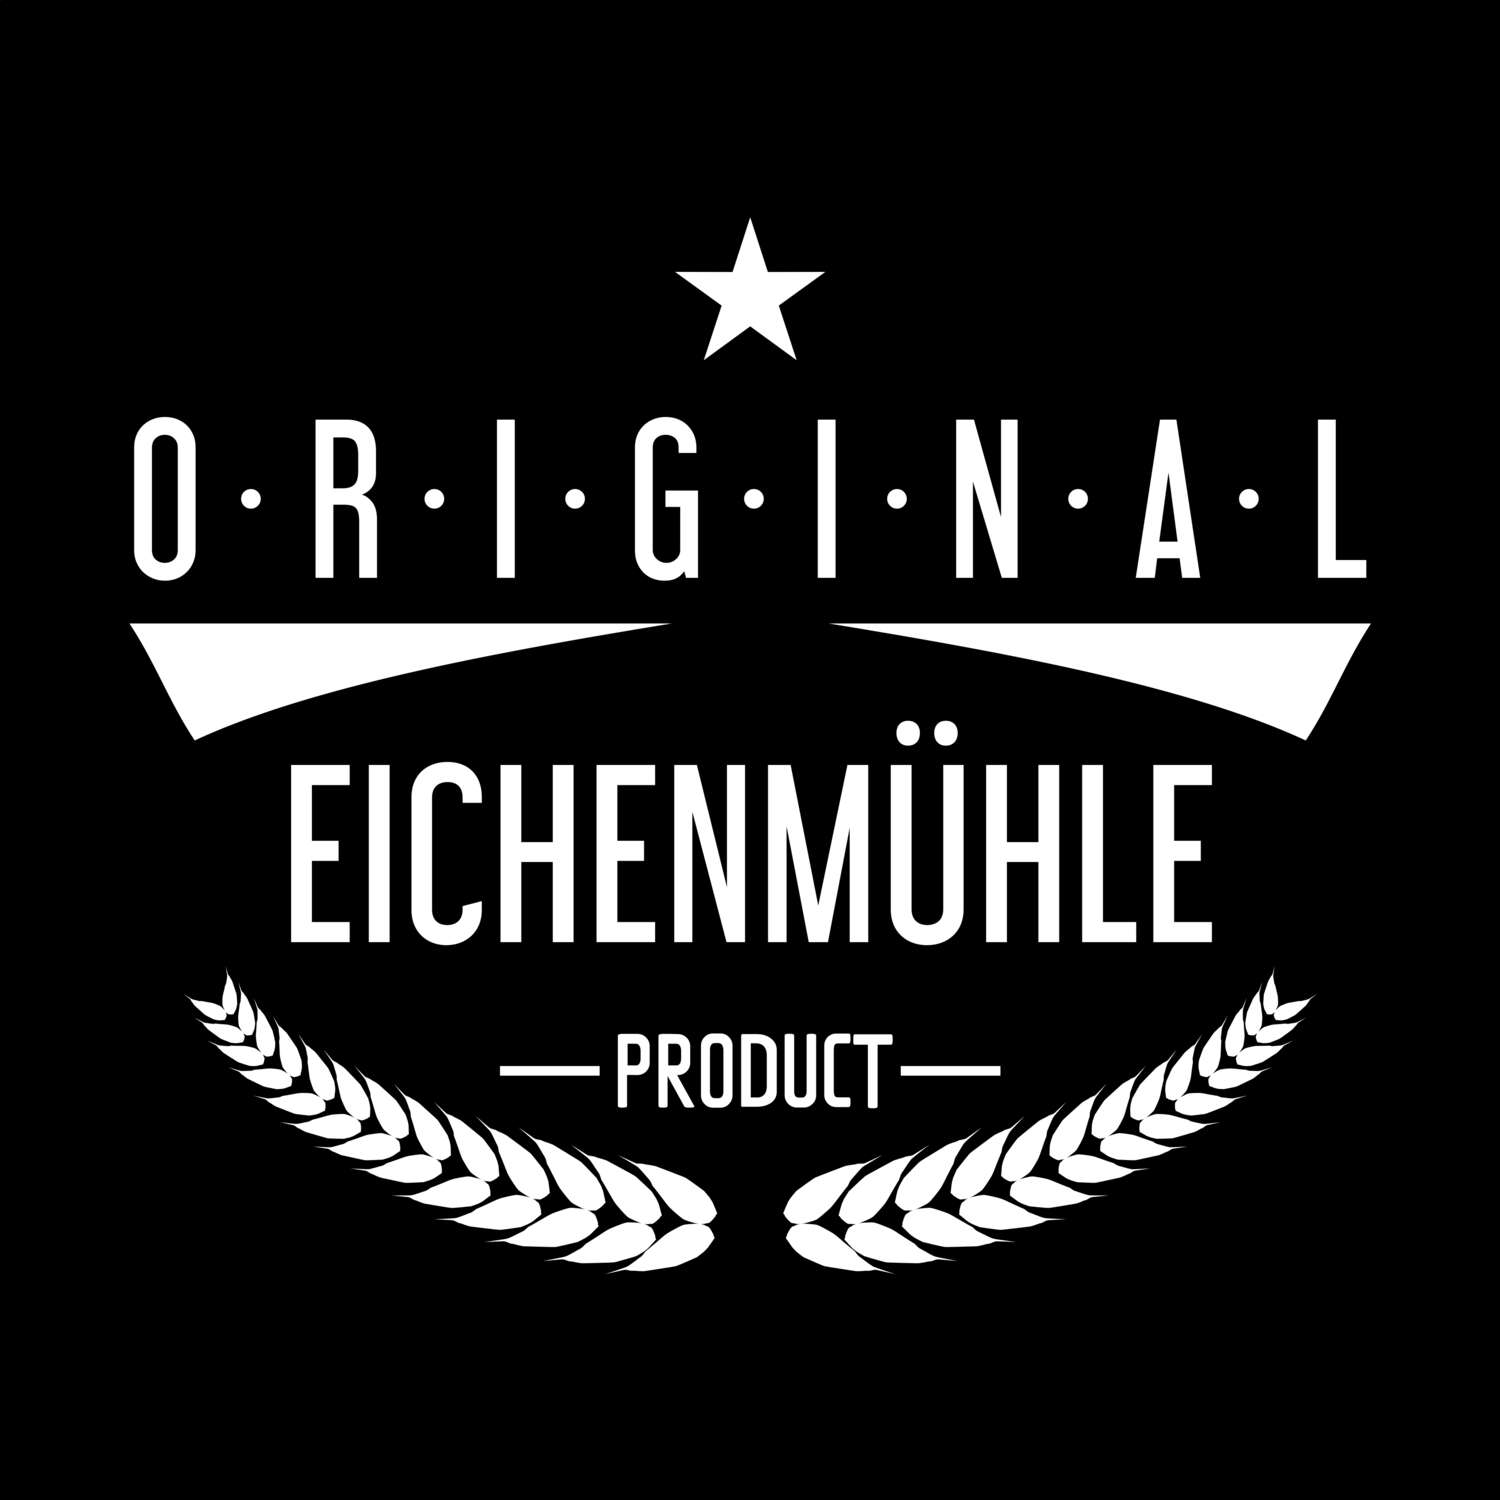 Eichenmühle T-Shirt »Original Product«